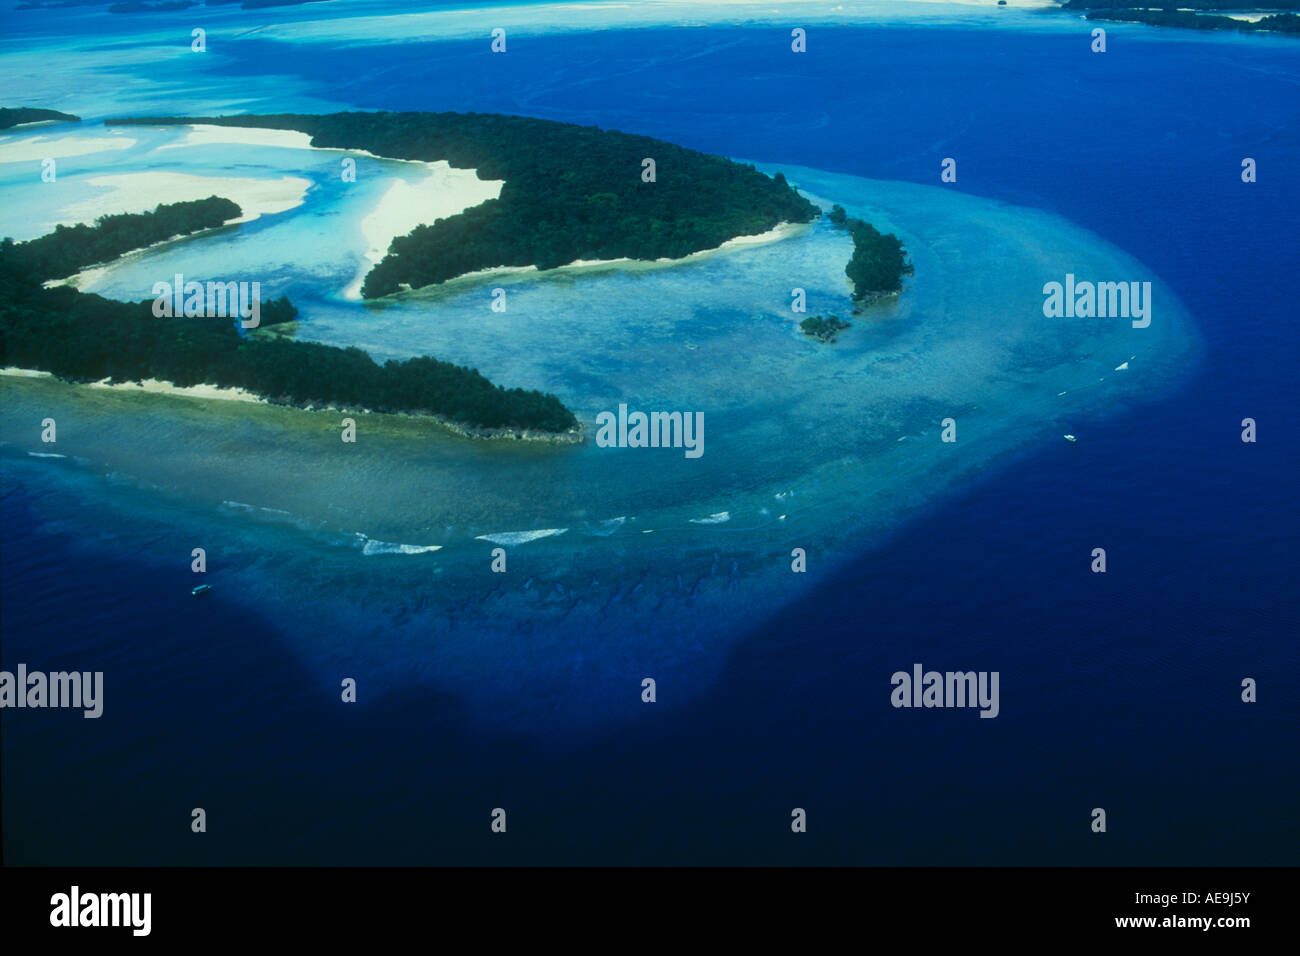 Die Western Barrier Reef in Palau fällt senkrecht in Tausenden Füße von Wasser. Dies ist ein Luftbild der Neuen dropoff und großen steilwand Tauchplätze. Stockfoto